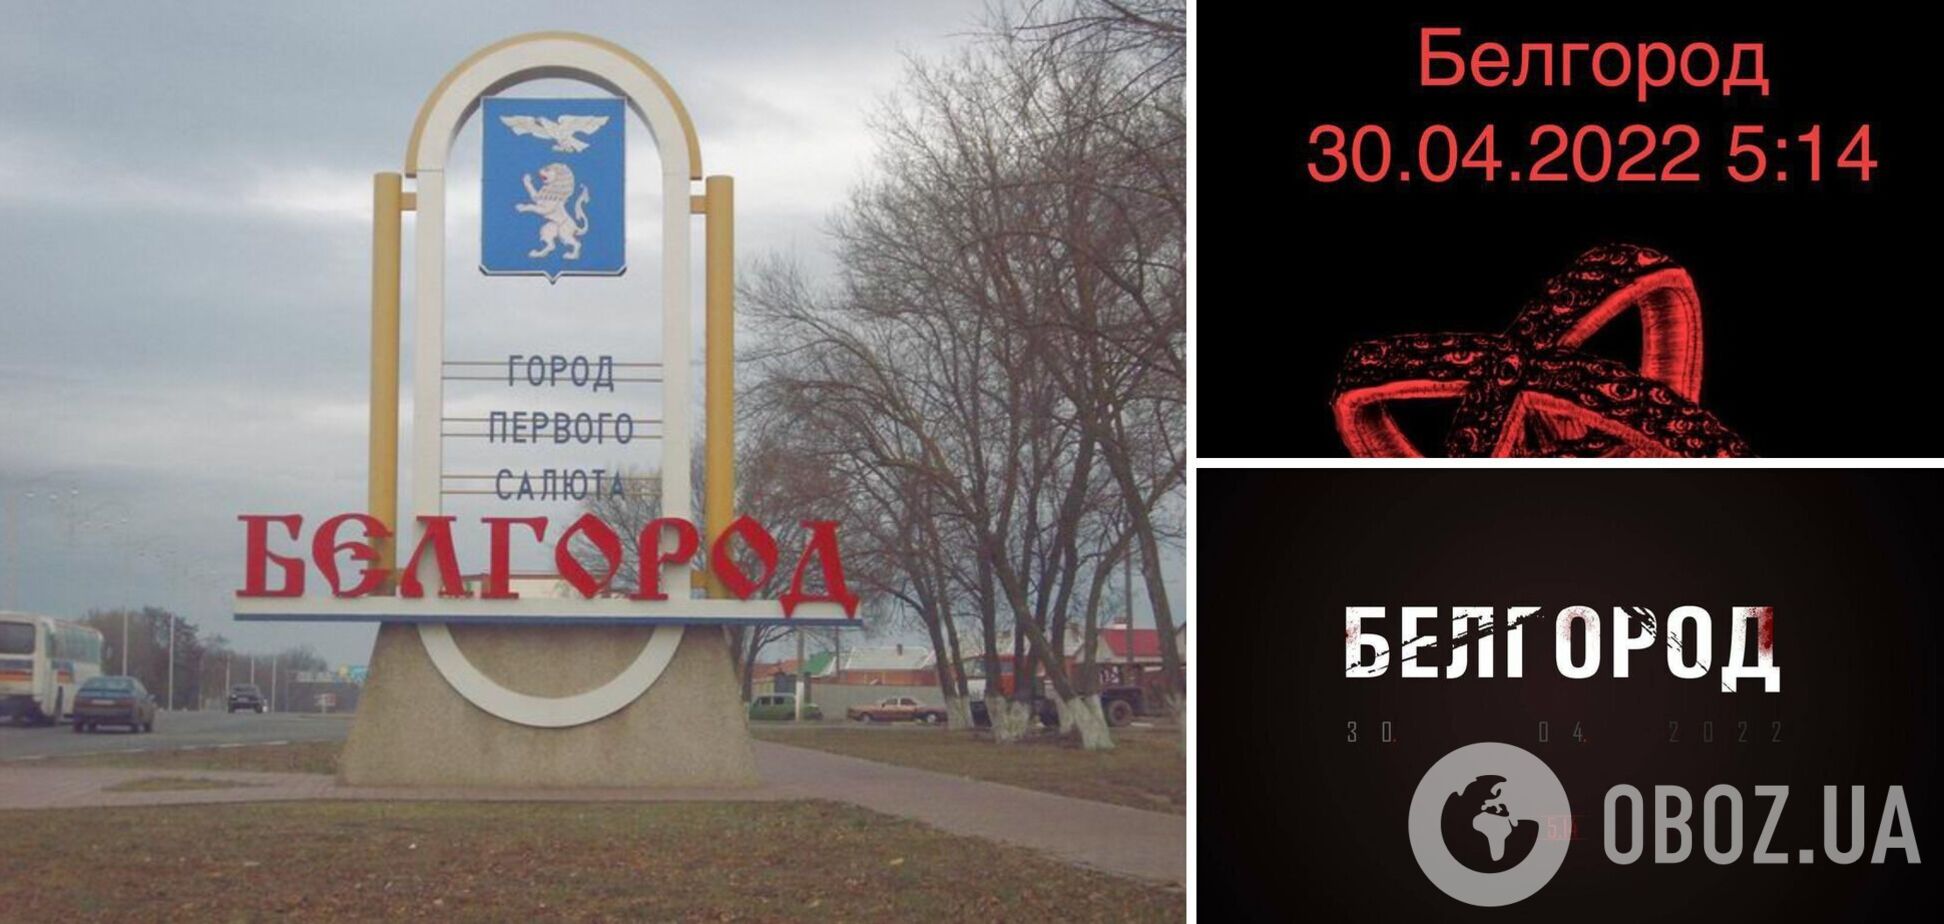 В российском Белгороде началась паника: в соцсетях распространяют сообщения об ударе в 5:14 утра. Фото и видео